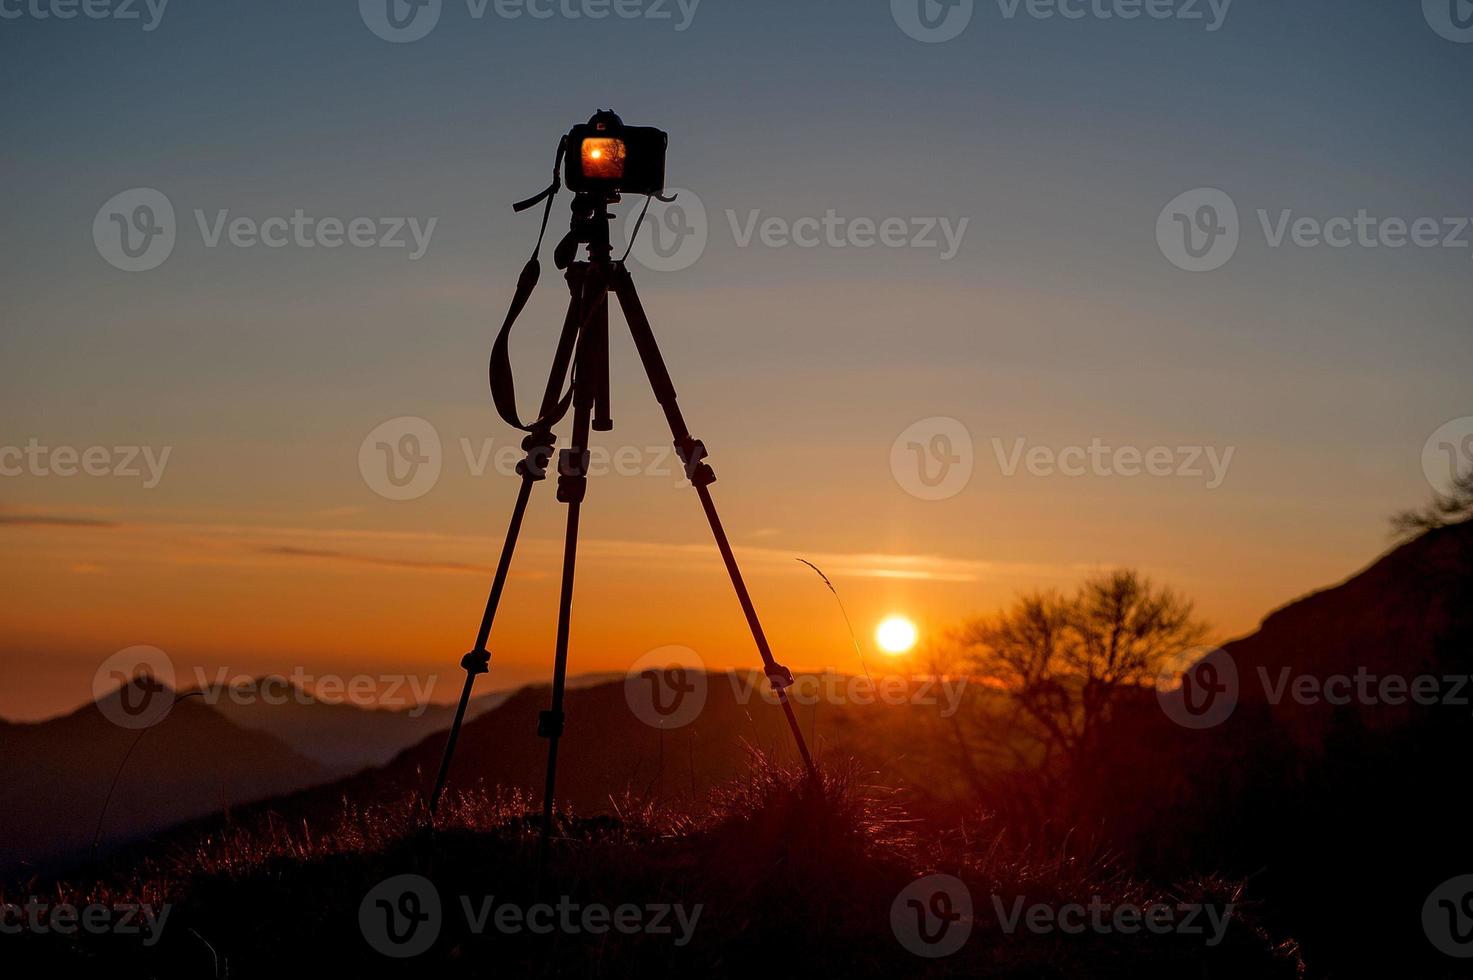 appareil photo sur trépied pour photographier le coucher du soleil